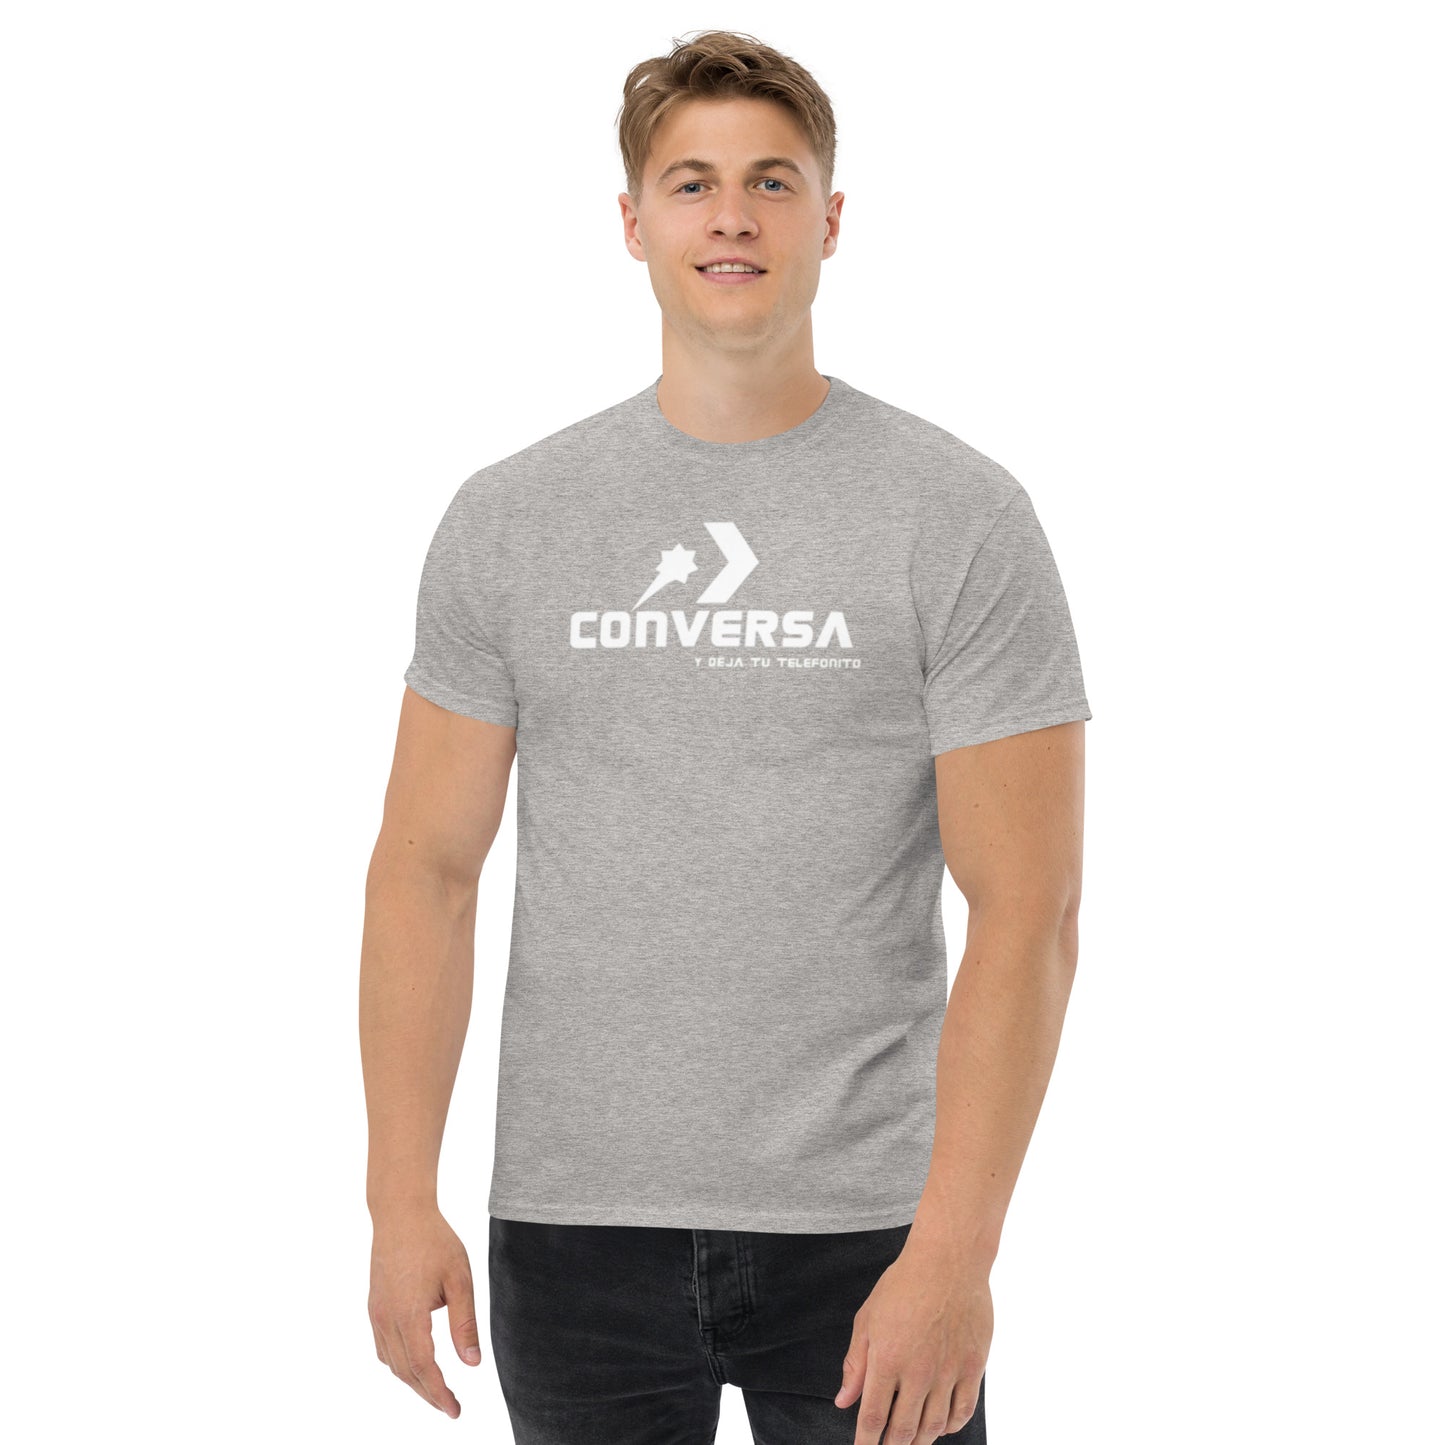 "Converse" T-shirt